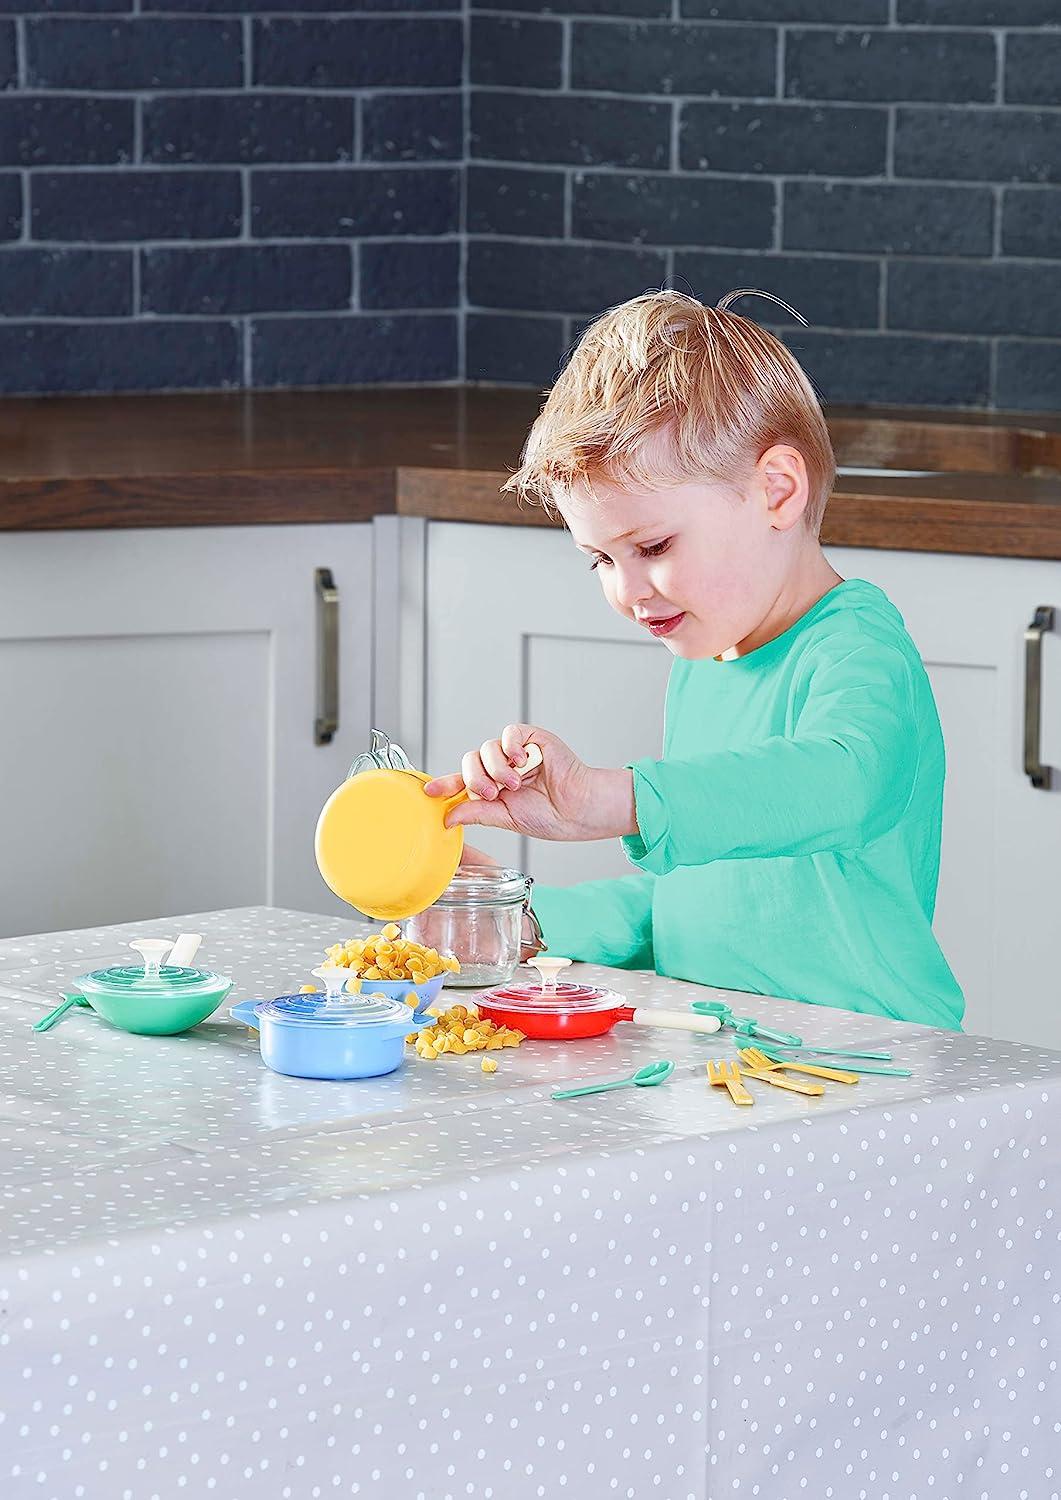 Casdon Pastel Colours Toy Pan Set For Children